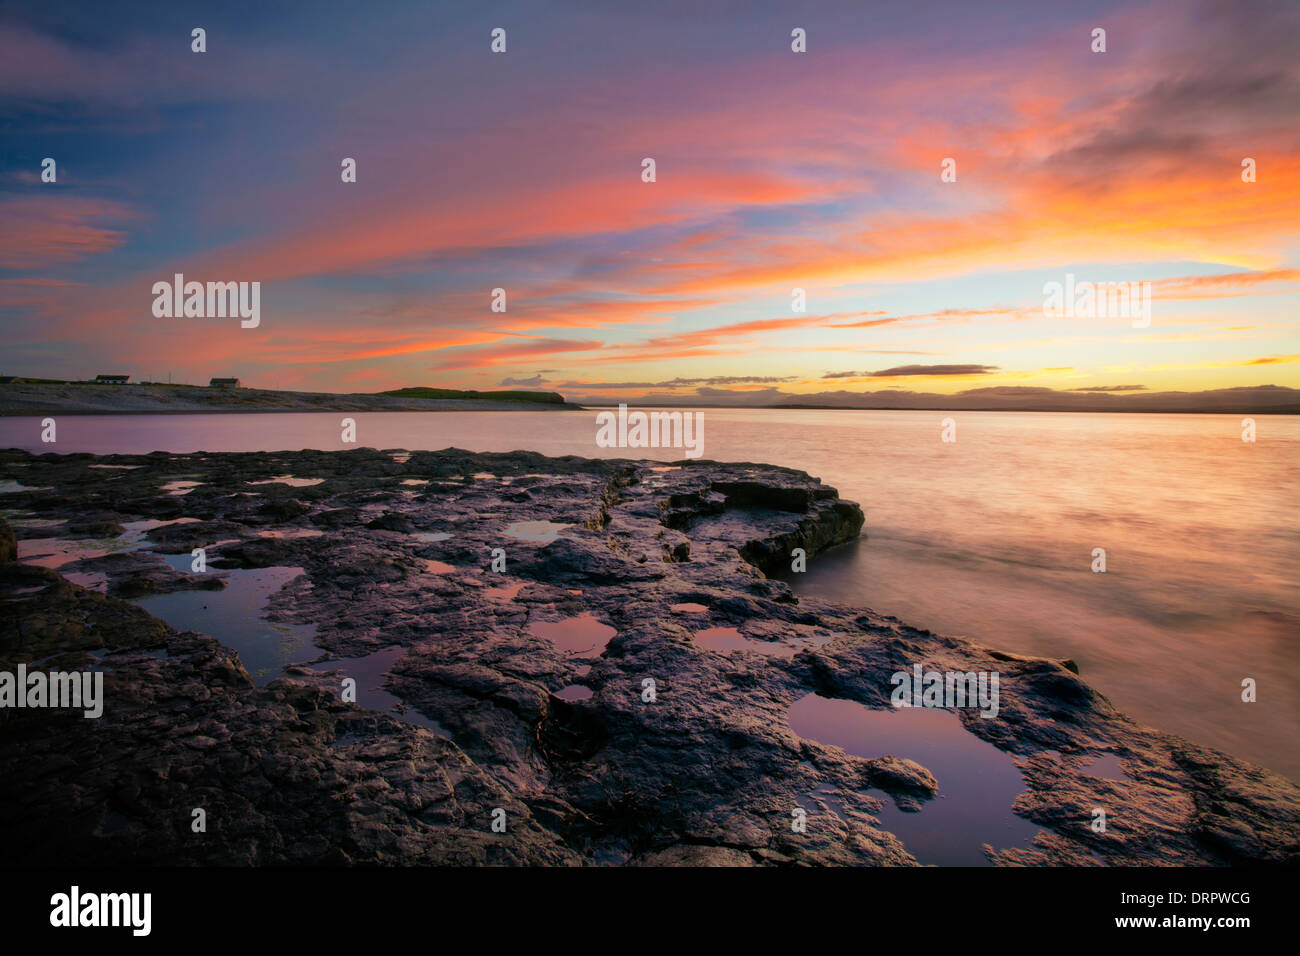 Sunset from the shore of Killala Bay, County Sligo, Ireland. Stock Photo